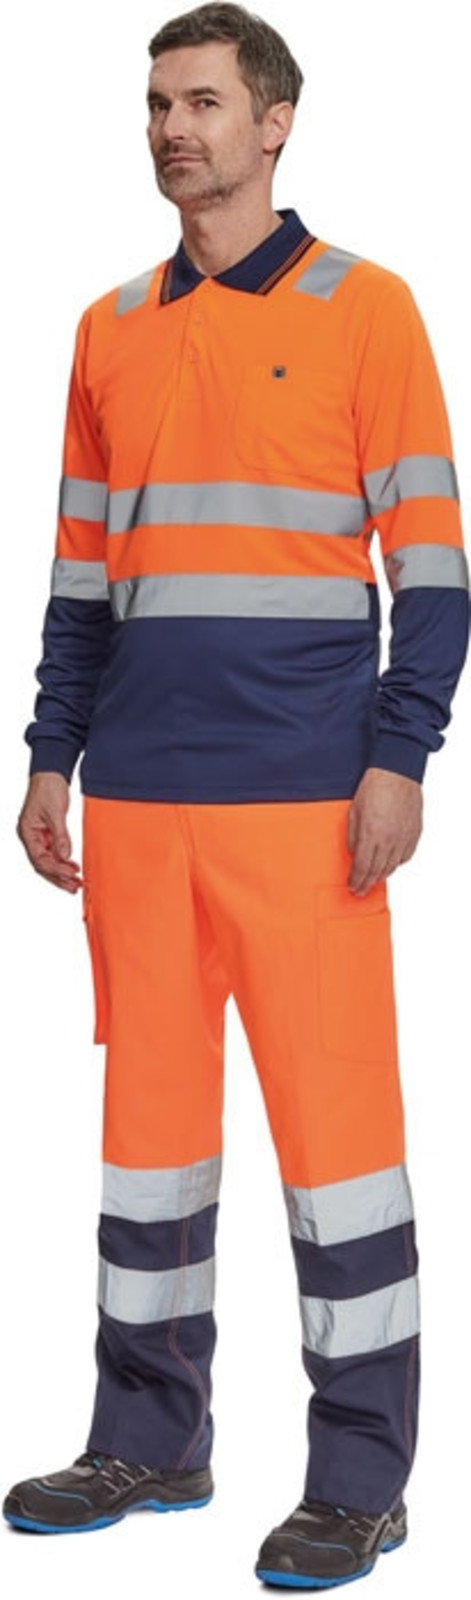 Reflexné nohavice Cerva Burgos HV - veľkosť: 56, farba: oranžová/navy